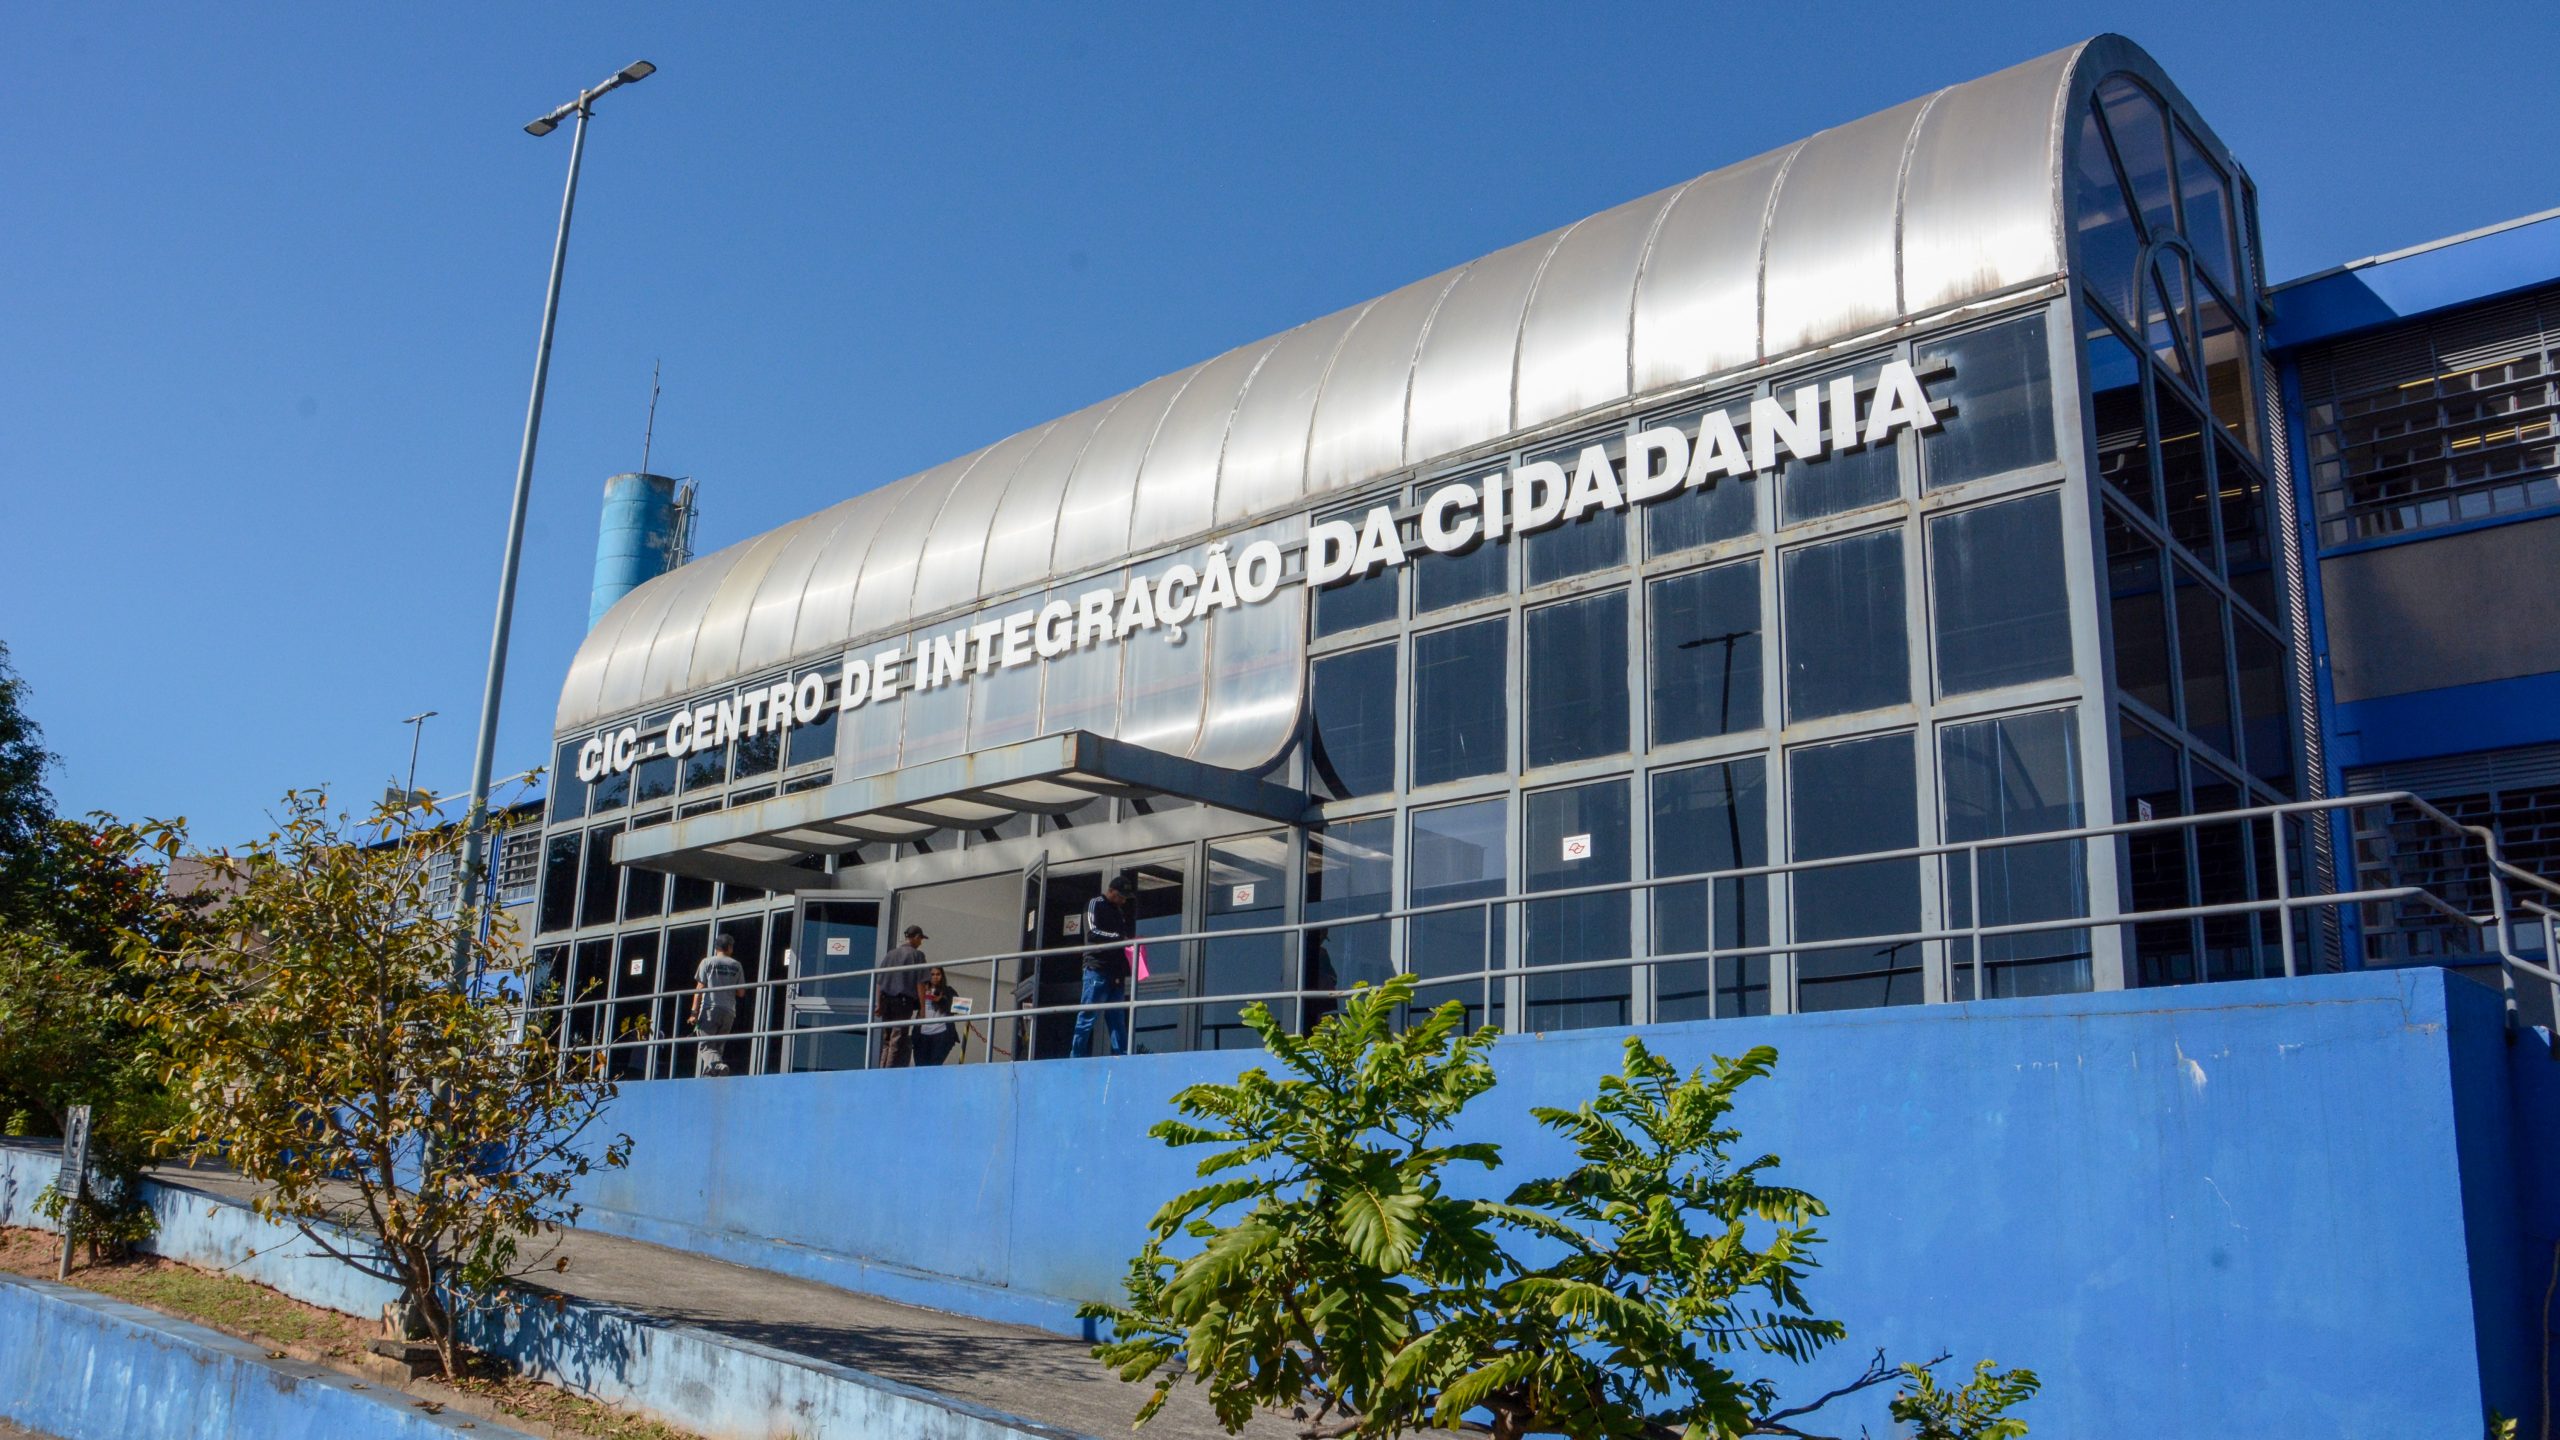 A foto mostra o Centro de Integração da Cidadania de Ferraz de Vasconcelos, em São Paulo. Está de dia, o céu está nublado com nuvens cinzas, a parede é azul e tem algumas árvores. O prédio tem vidros pretos.